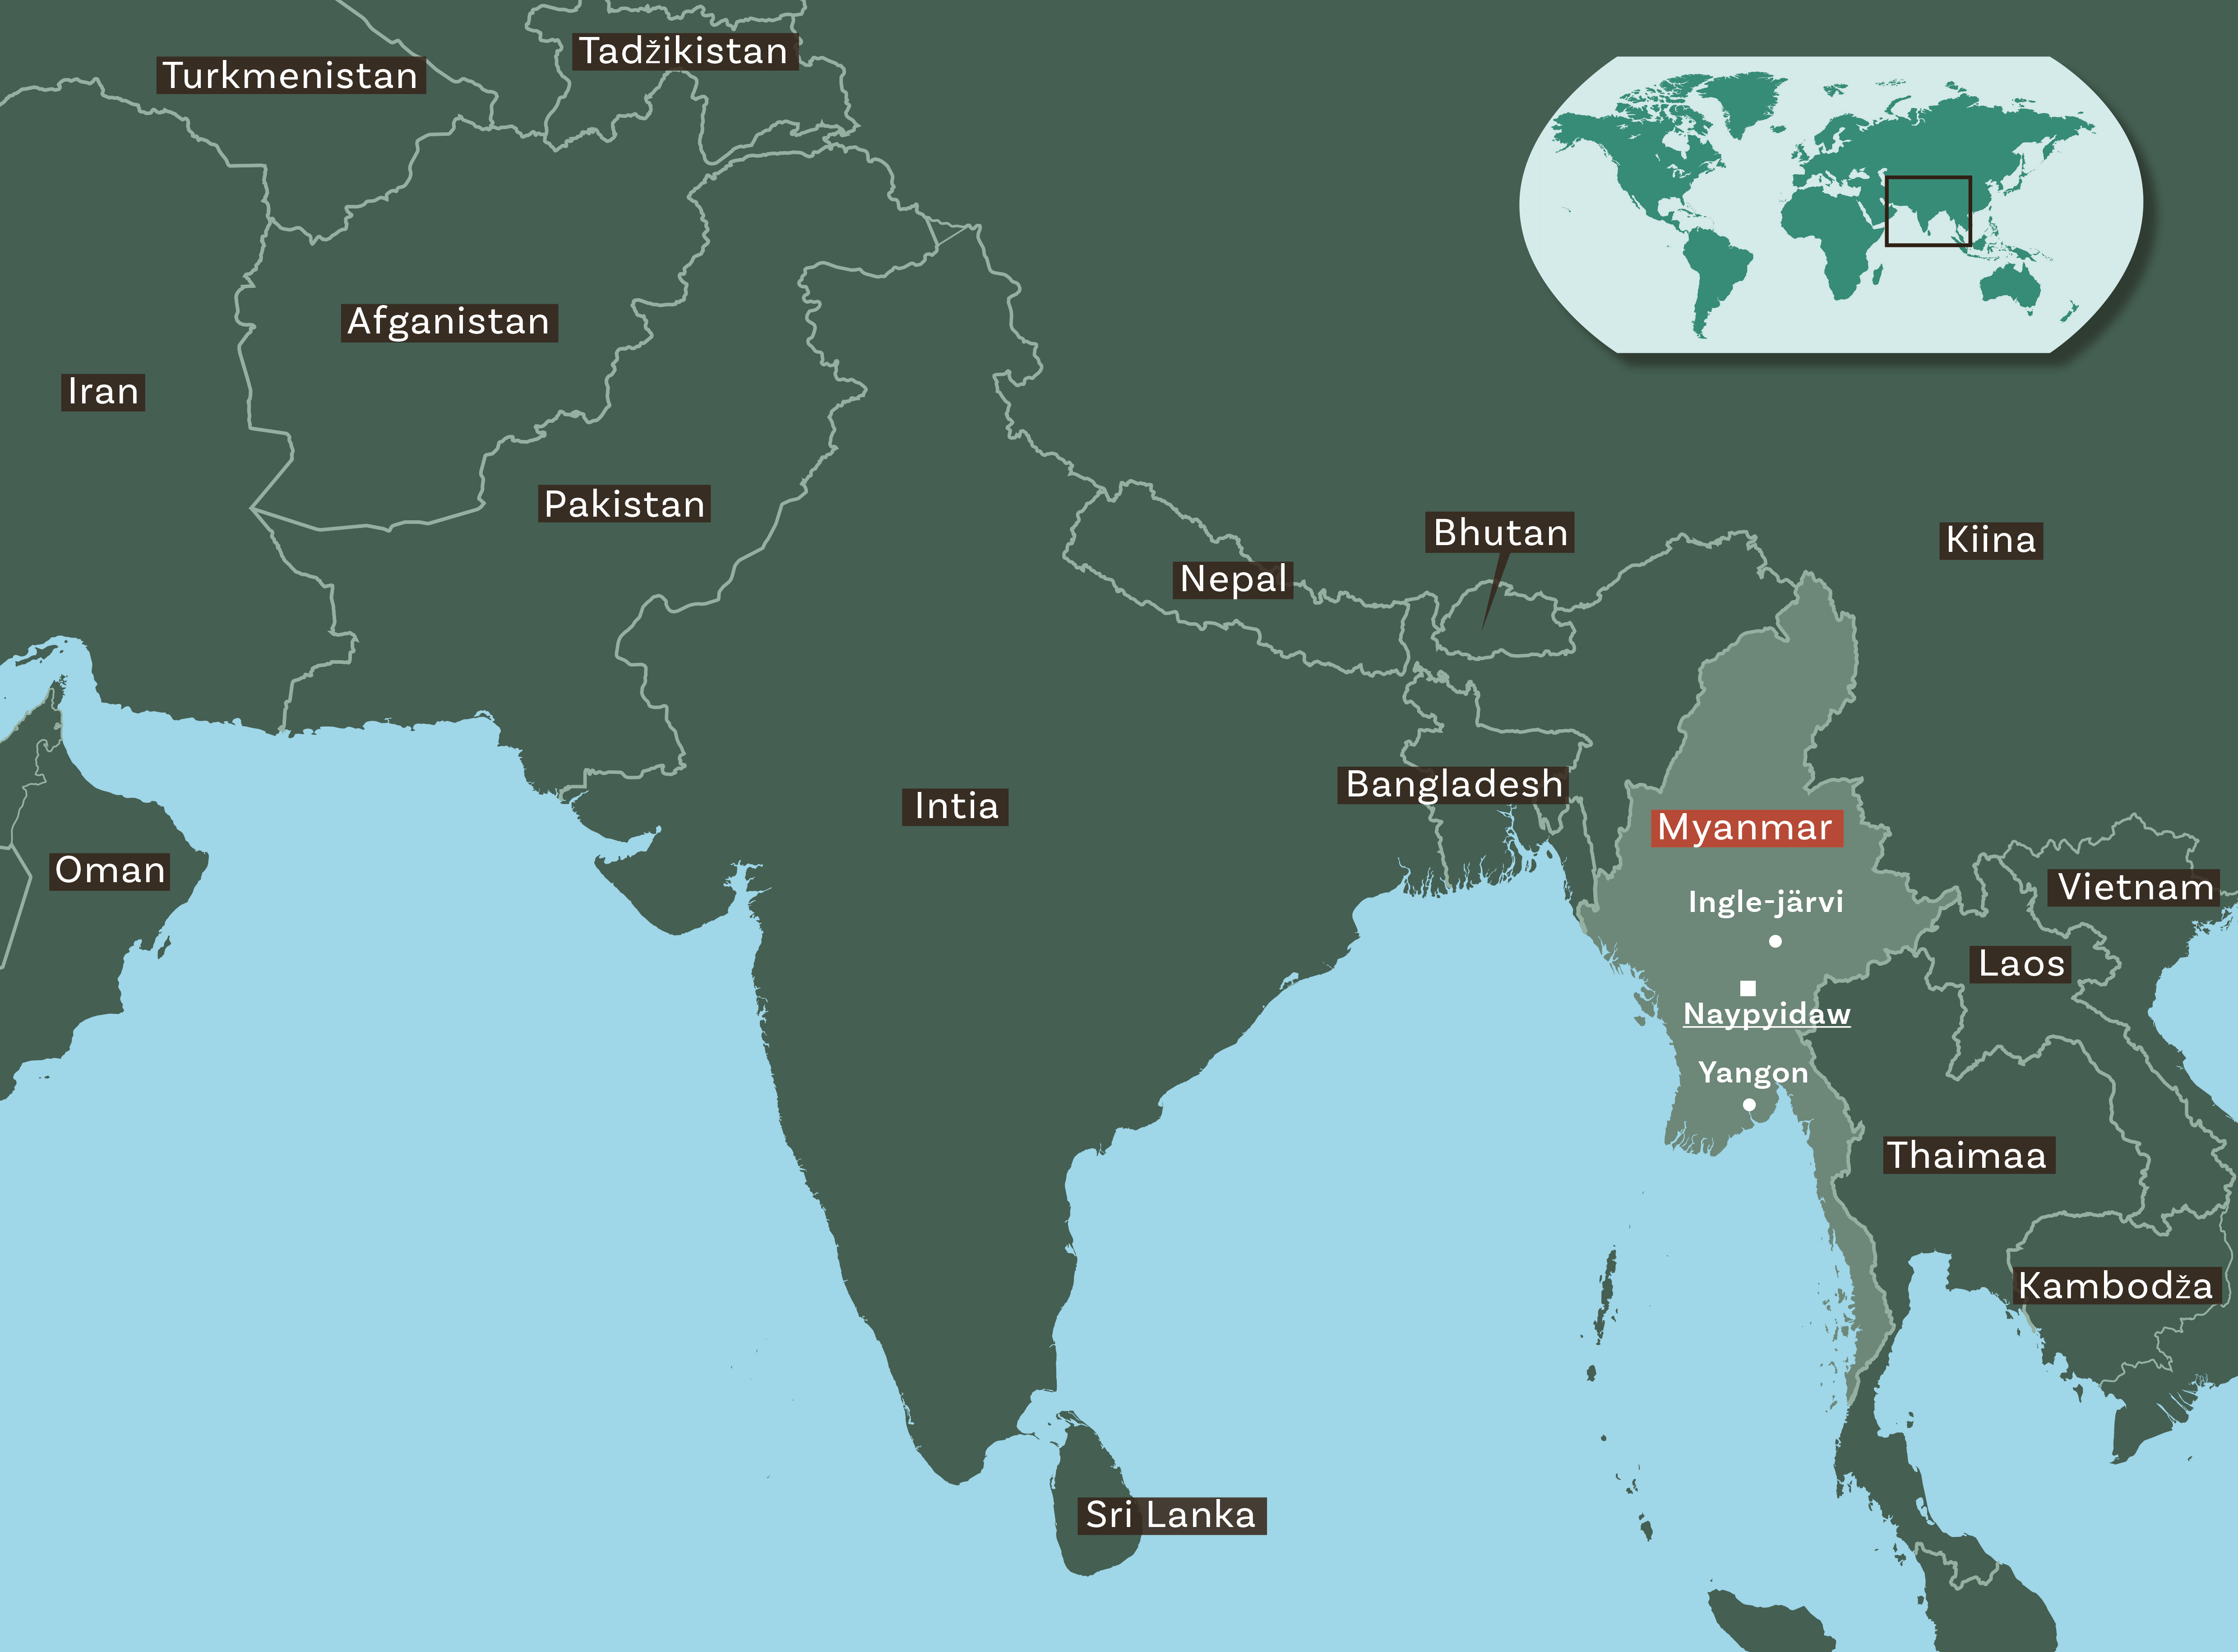 Kartalla näkyvät Myanmarin naapurivaltiot: Kiina, Laos, Thaimaa, Butan, Bangladesh. Kartassa näkyy myös muita Aasian maita. Yläkulmassa maailman kartta.